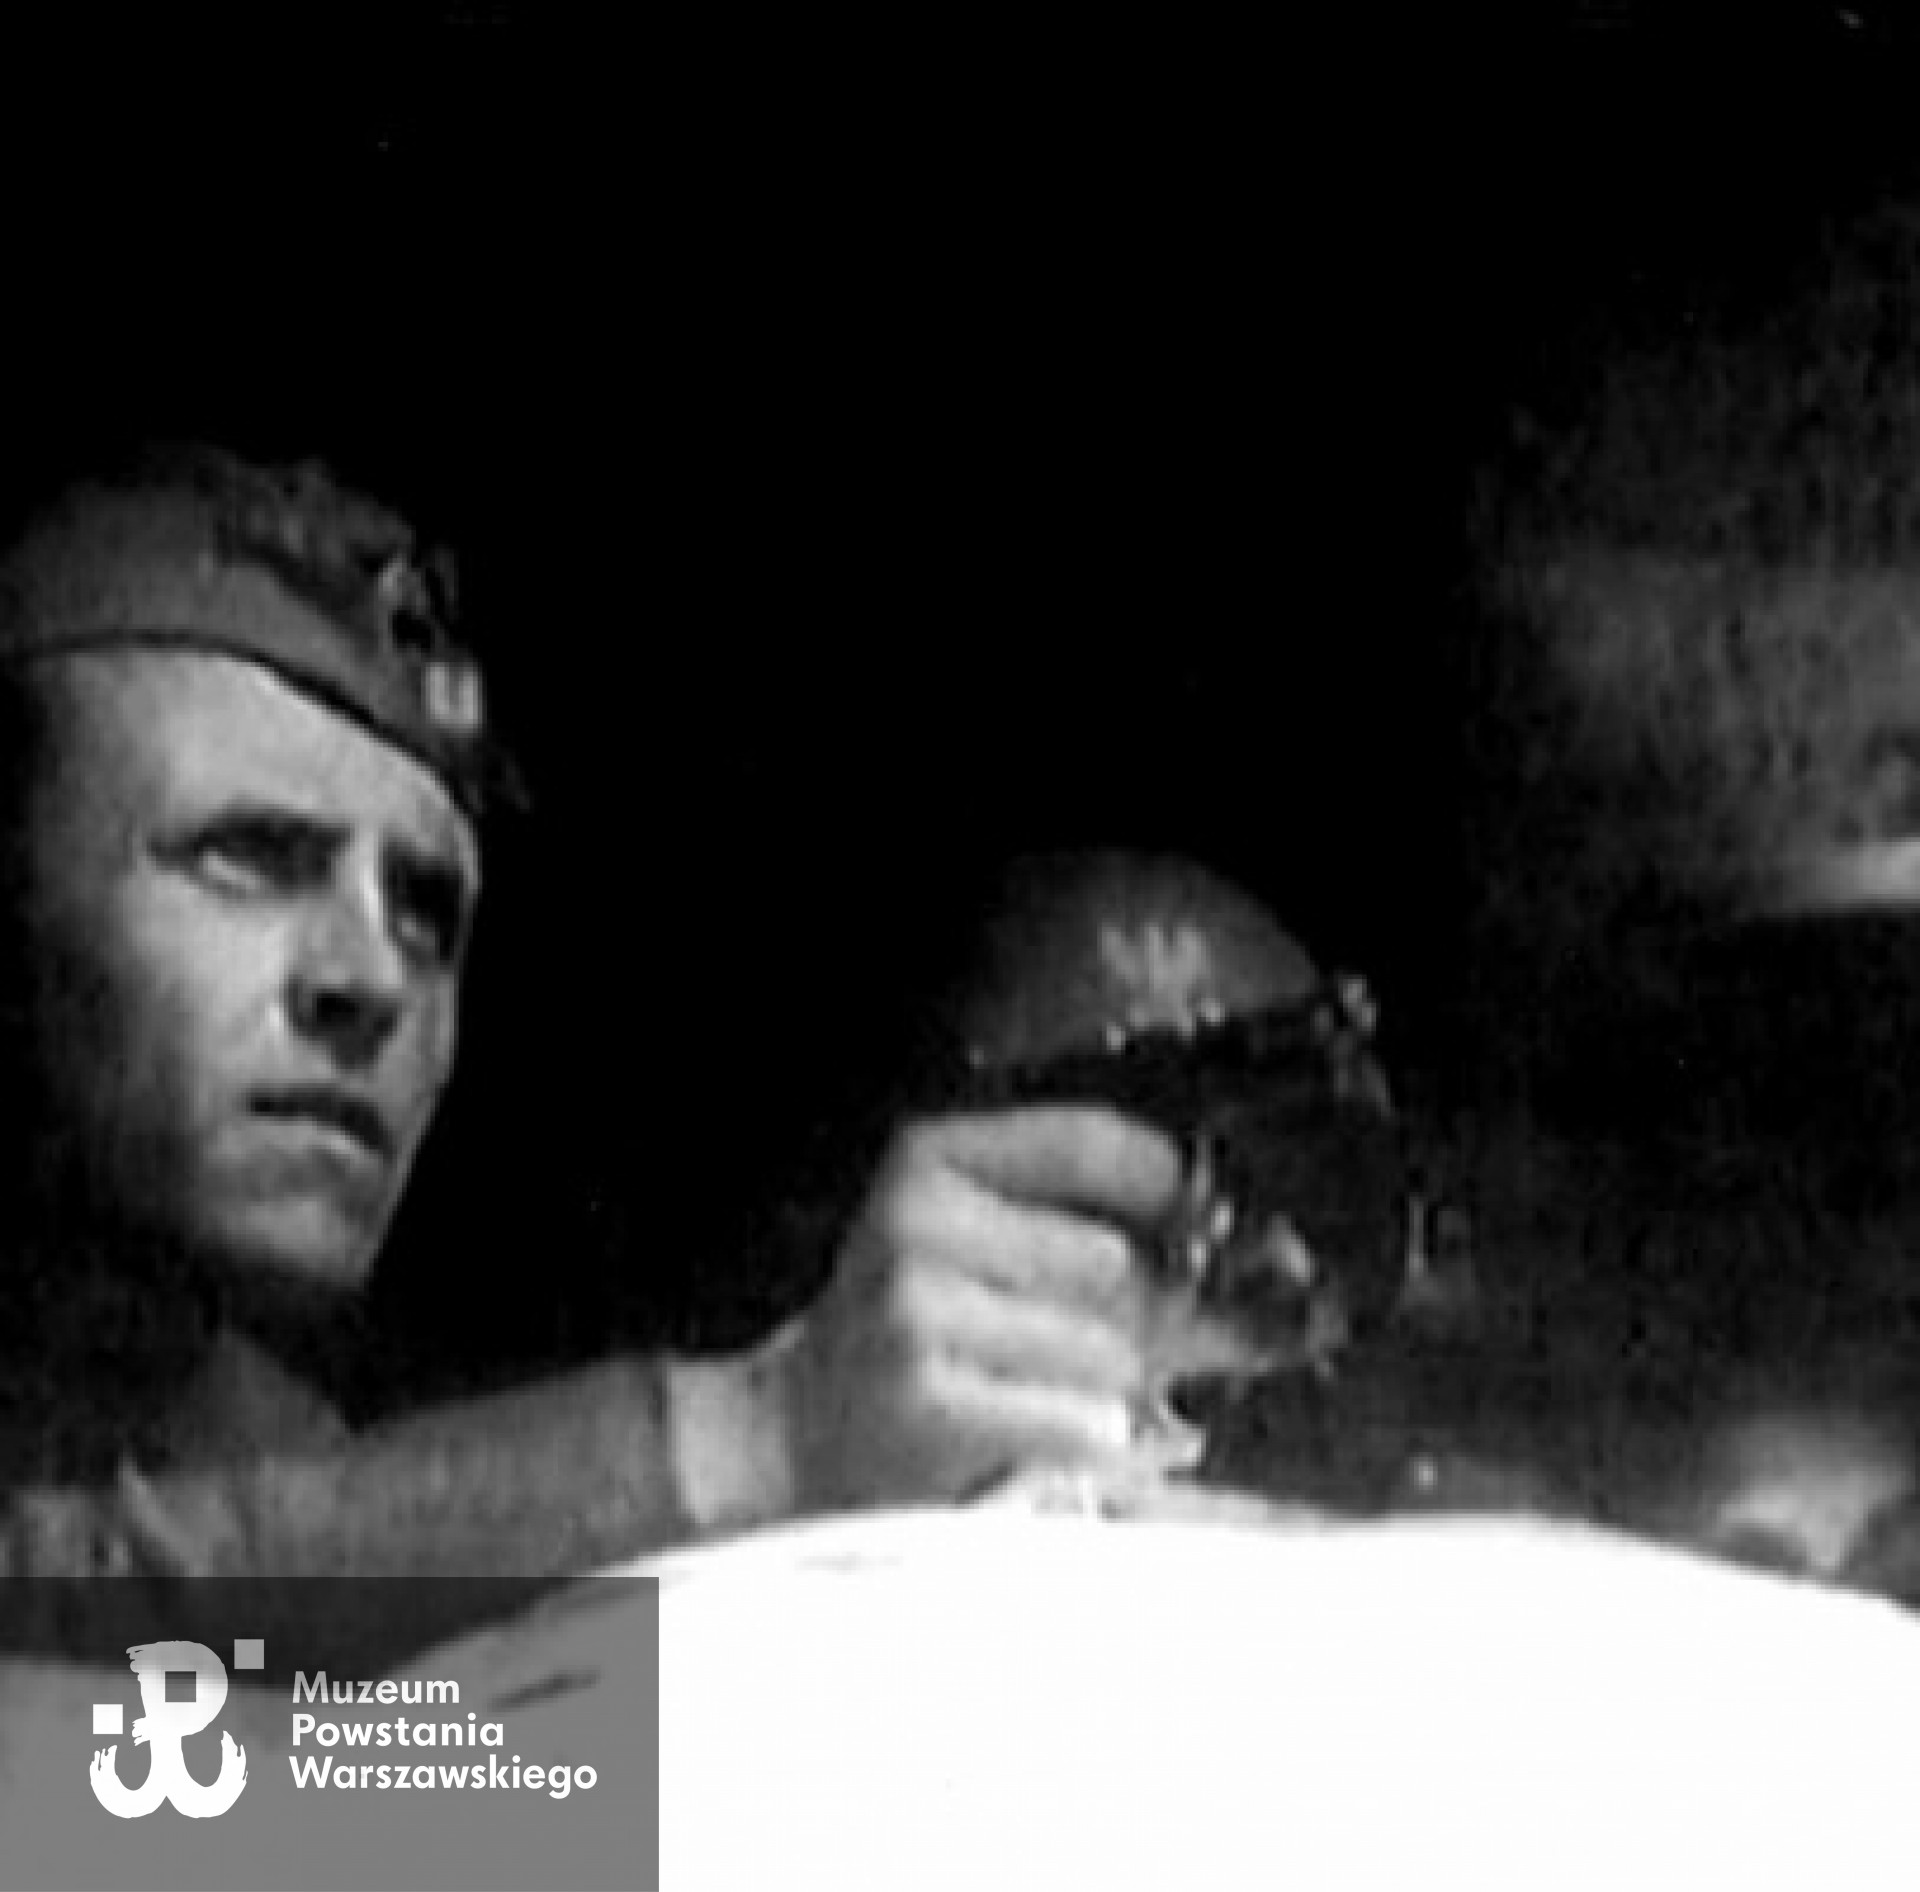 Powstanie Warszawskie - kapral "Bomba" z pistoletem - zdjęcie wykonano przed zranieniem.